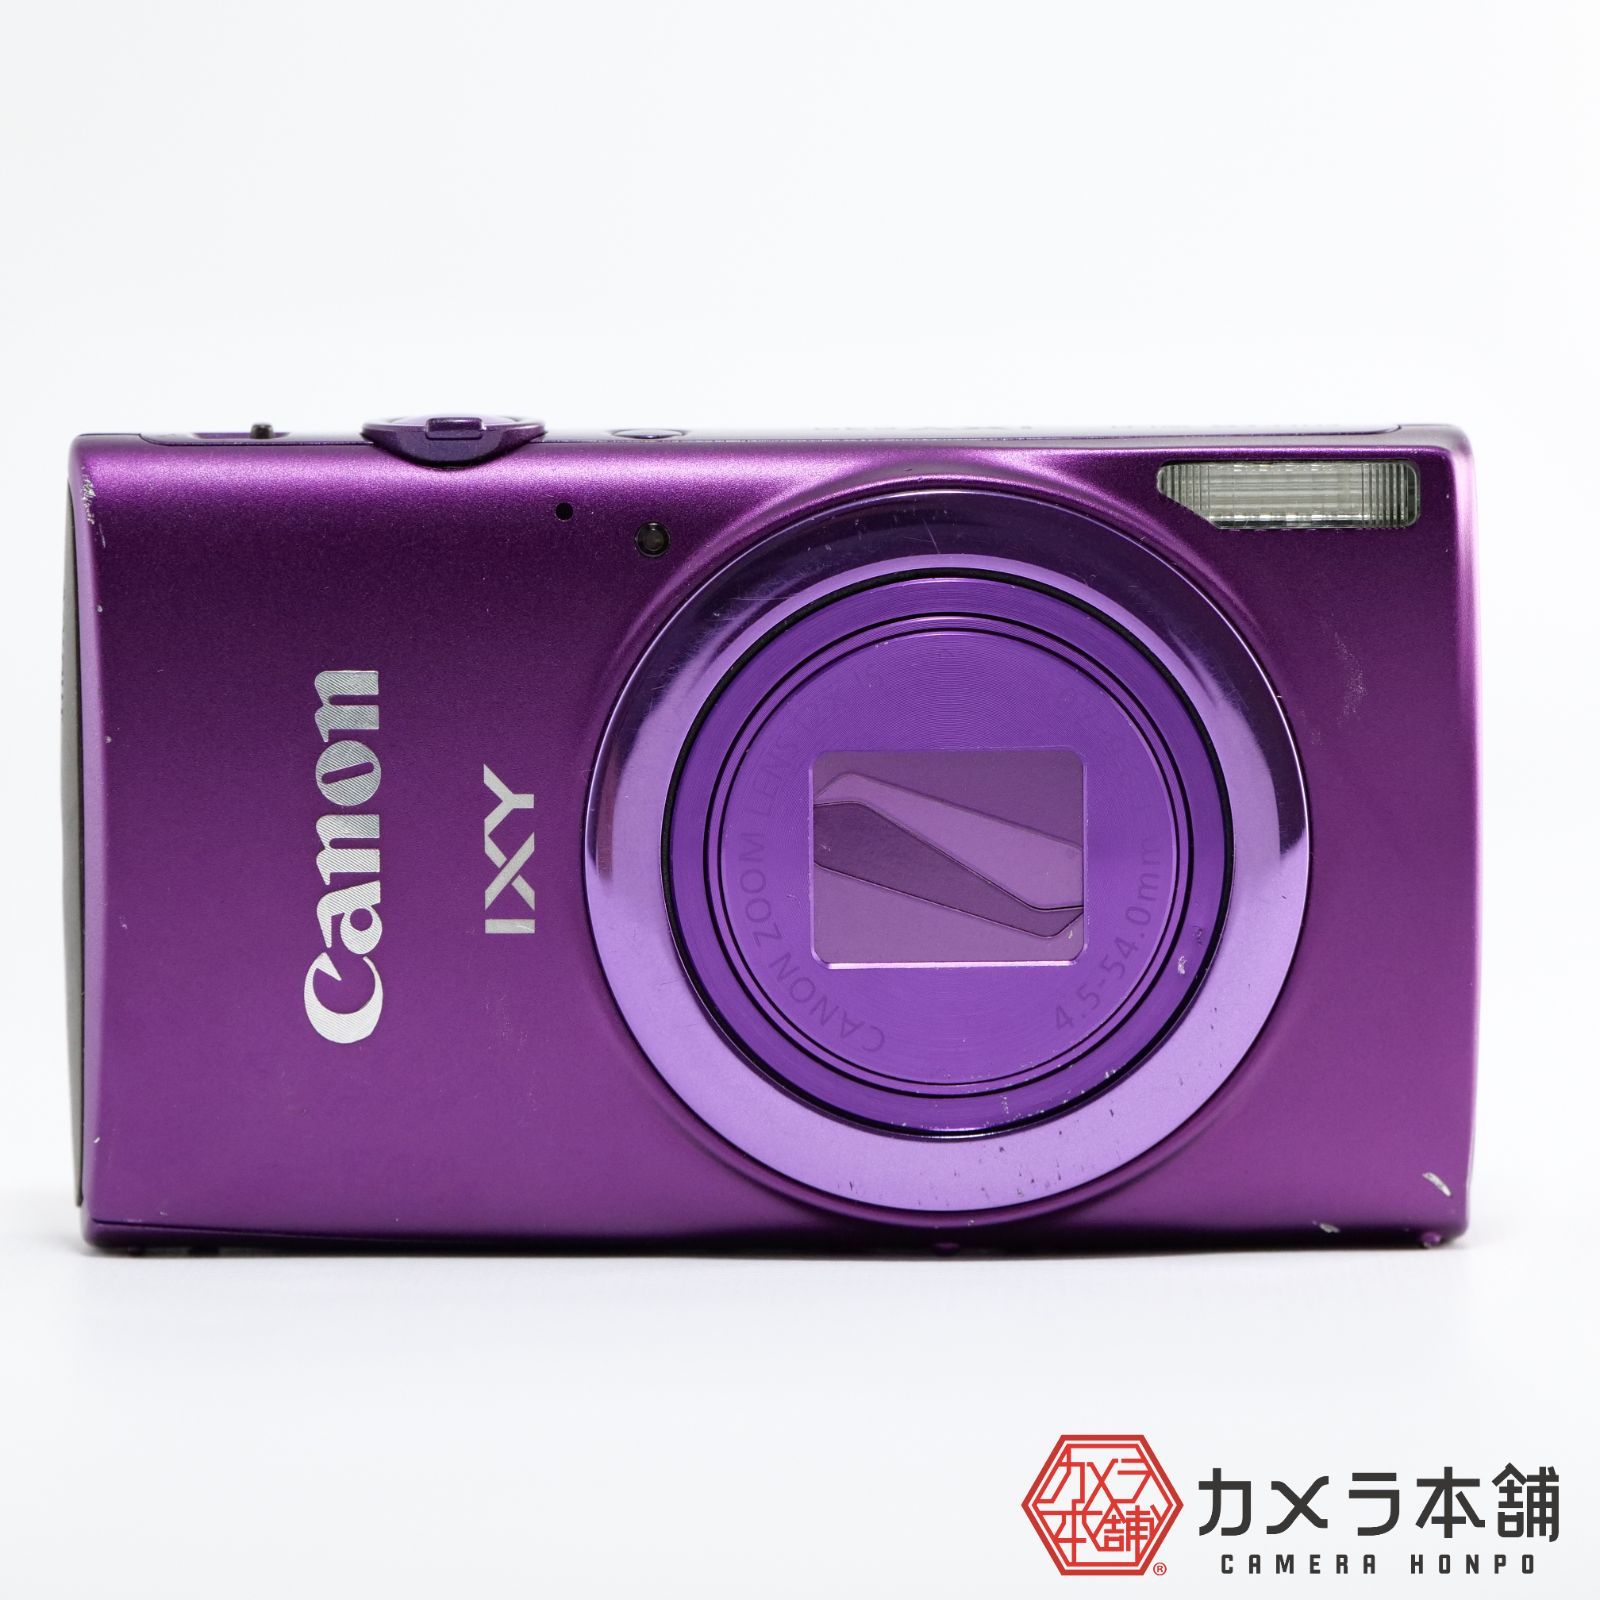 Canon キヤノン デジタルカメラ IXY 630 光学12倍ズーム パープル